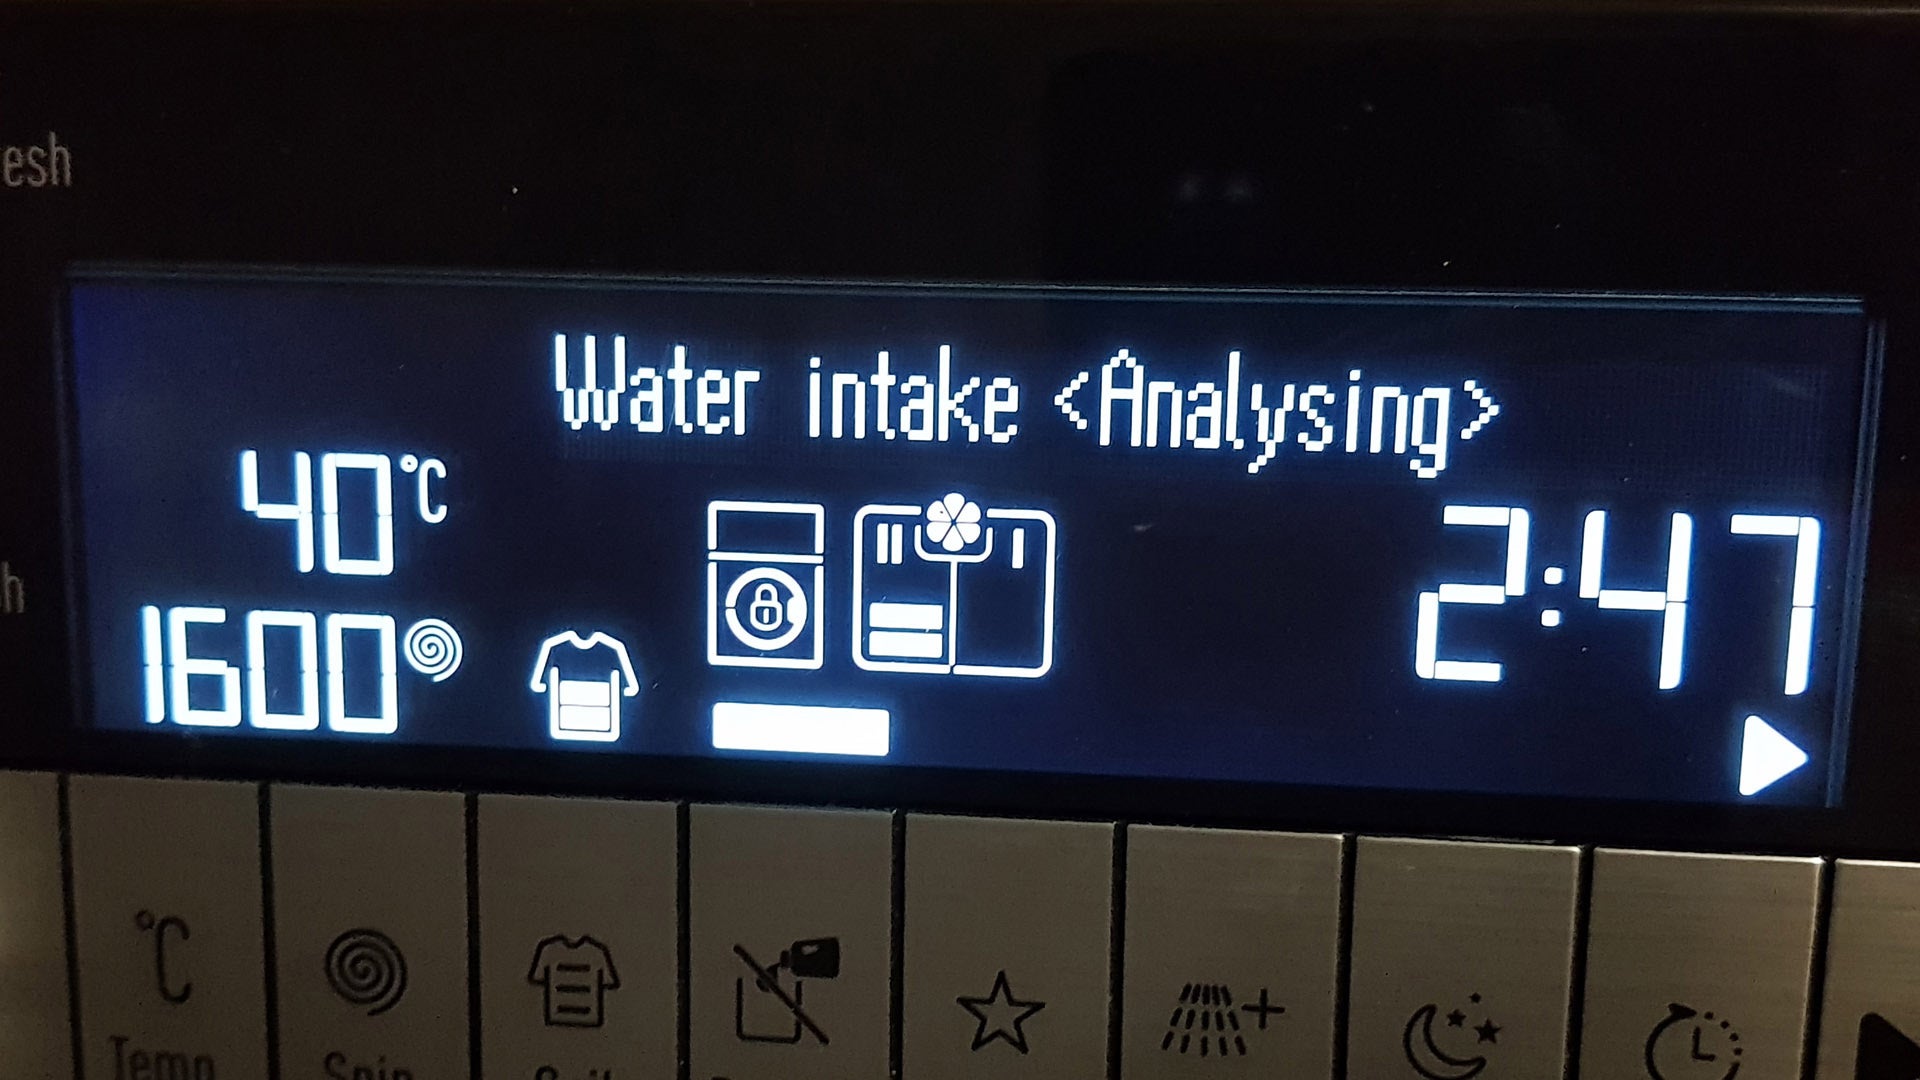 Grundig washing machine display showing water intake analysis.